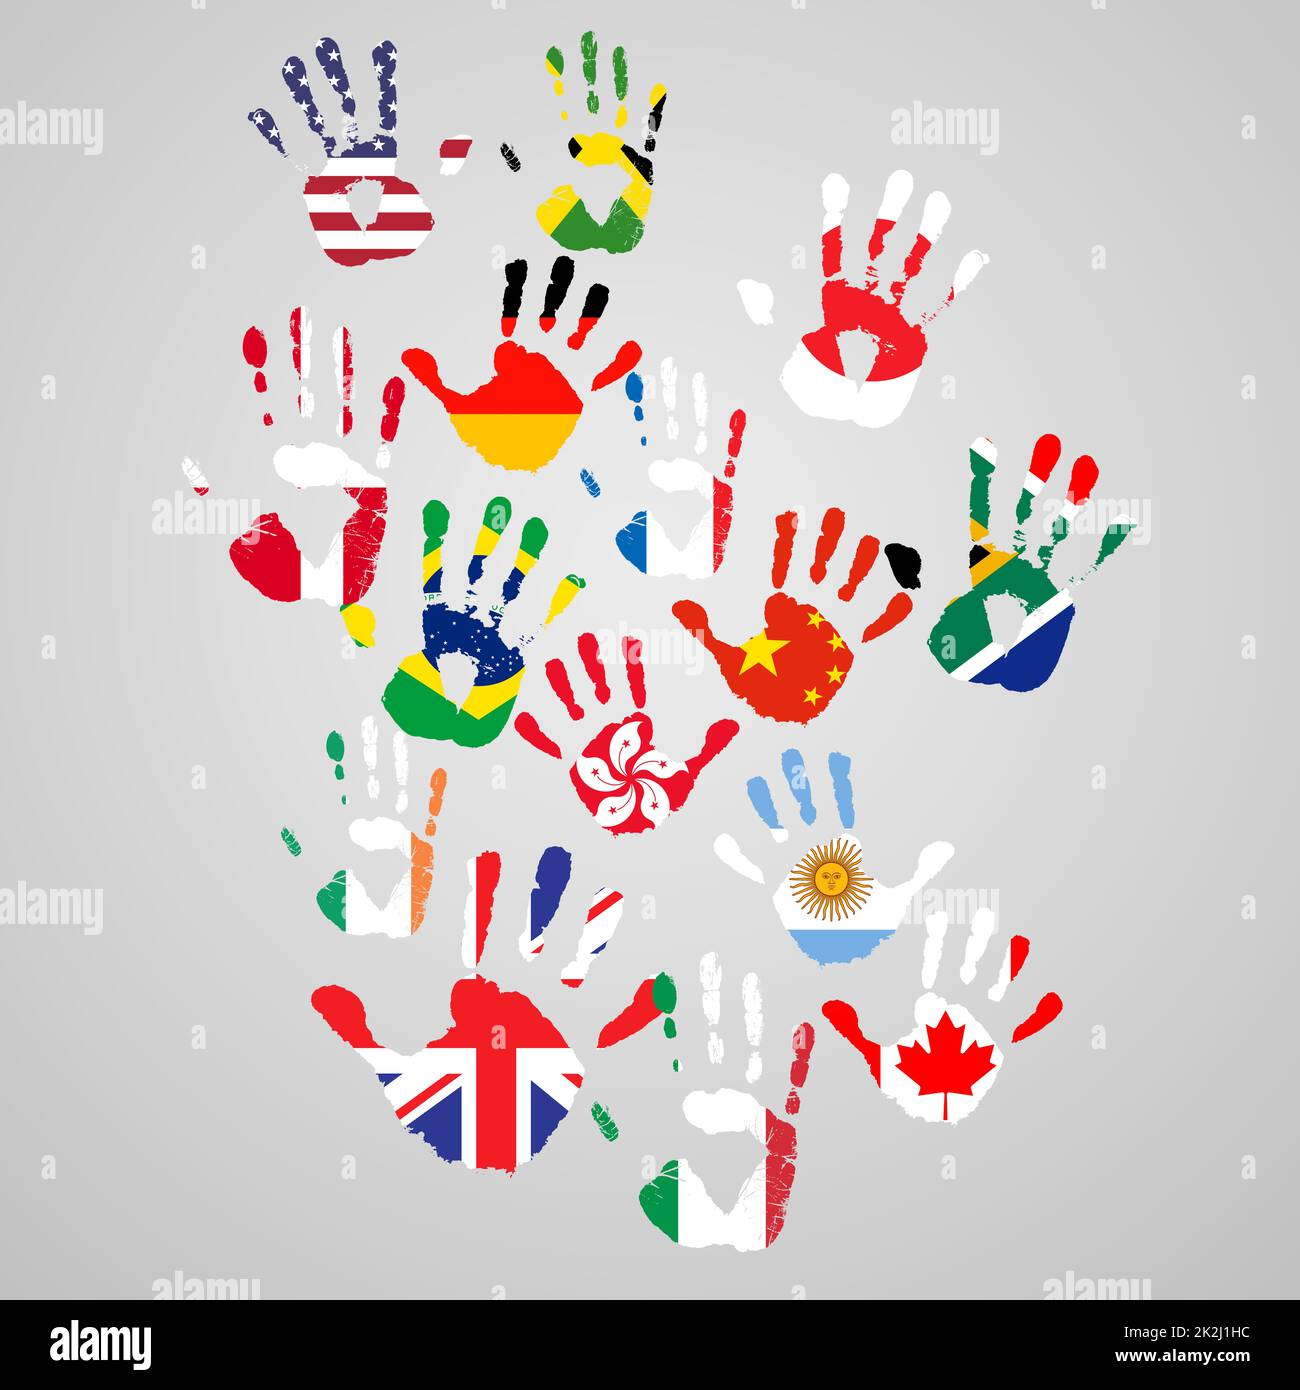 Prêter main au changement mondial.Représentations des empreintes de personnes du monde entier. Banque D'Images